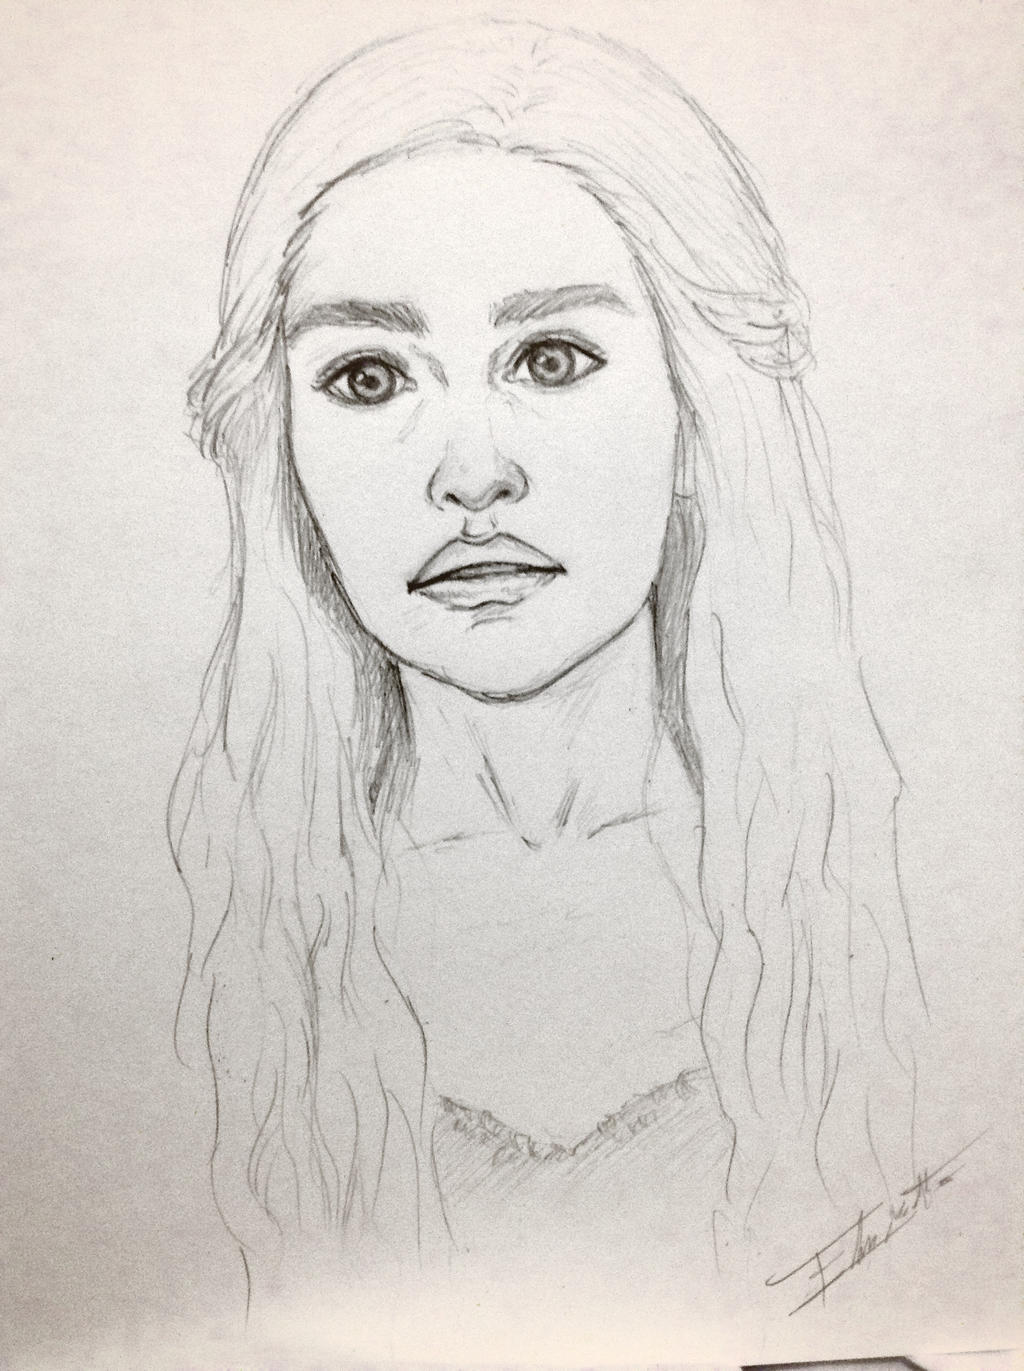 Daenerys Targaryen by elin14 on DeviantArt